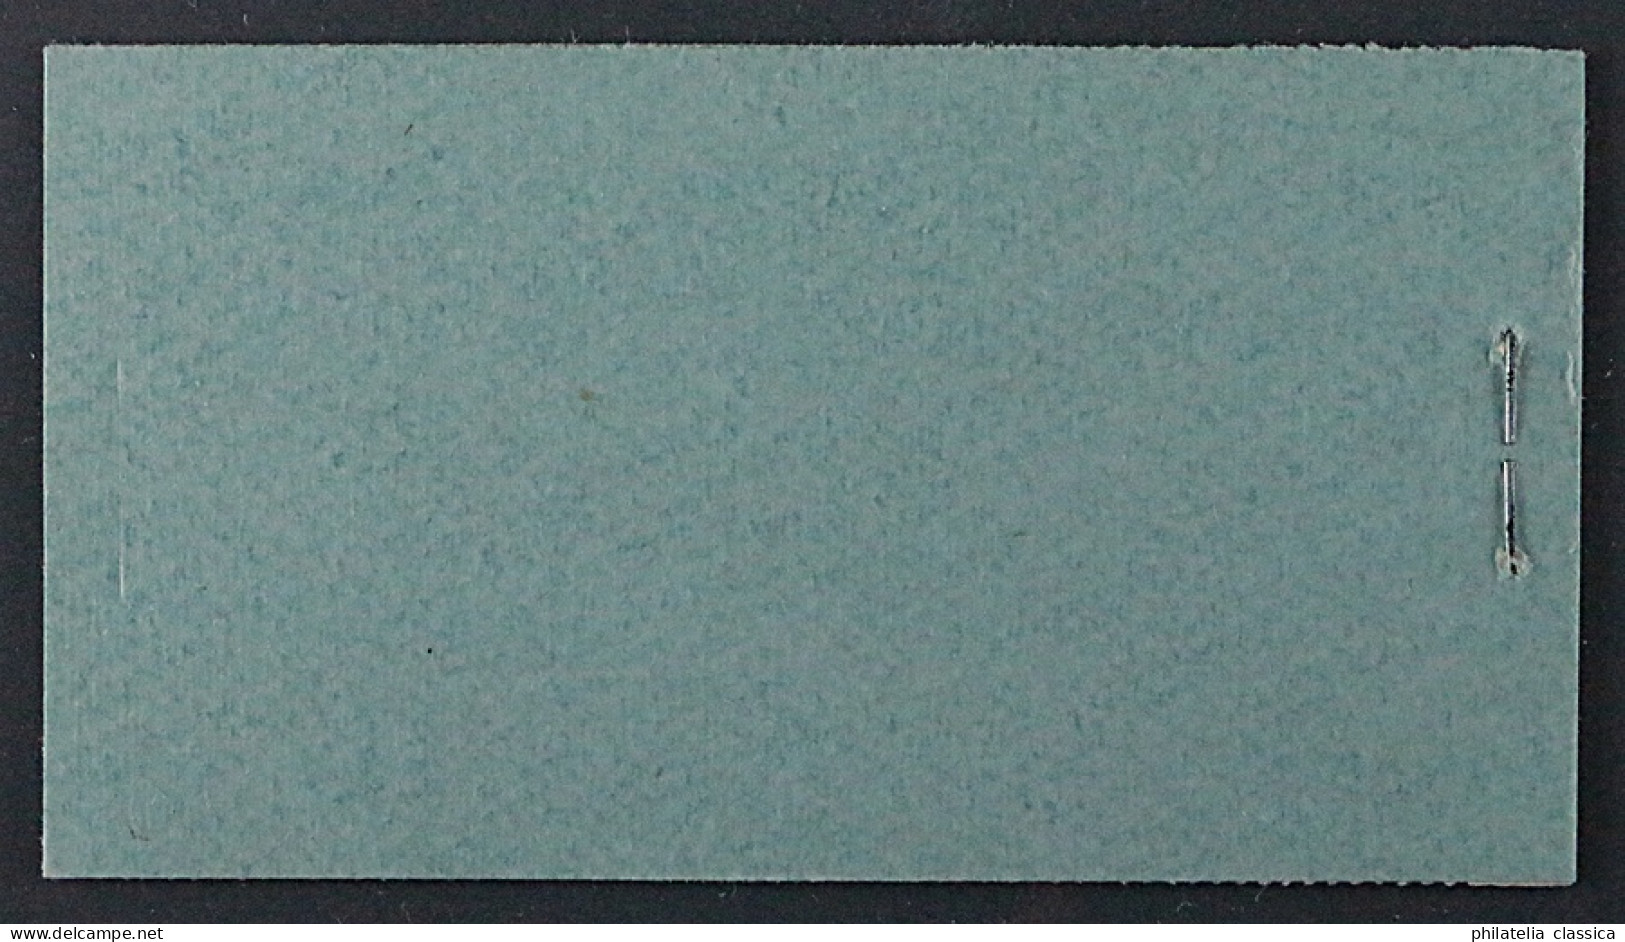 MARKENHEFTCHEN 28.2 ** Nothilfe 1929 Korrigiertes Datum, Postfrisch, KW 1100,- € - Carnets